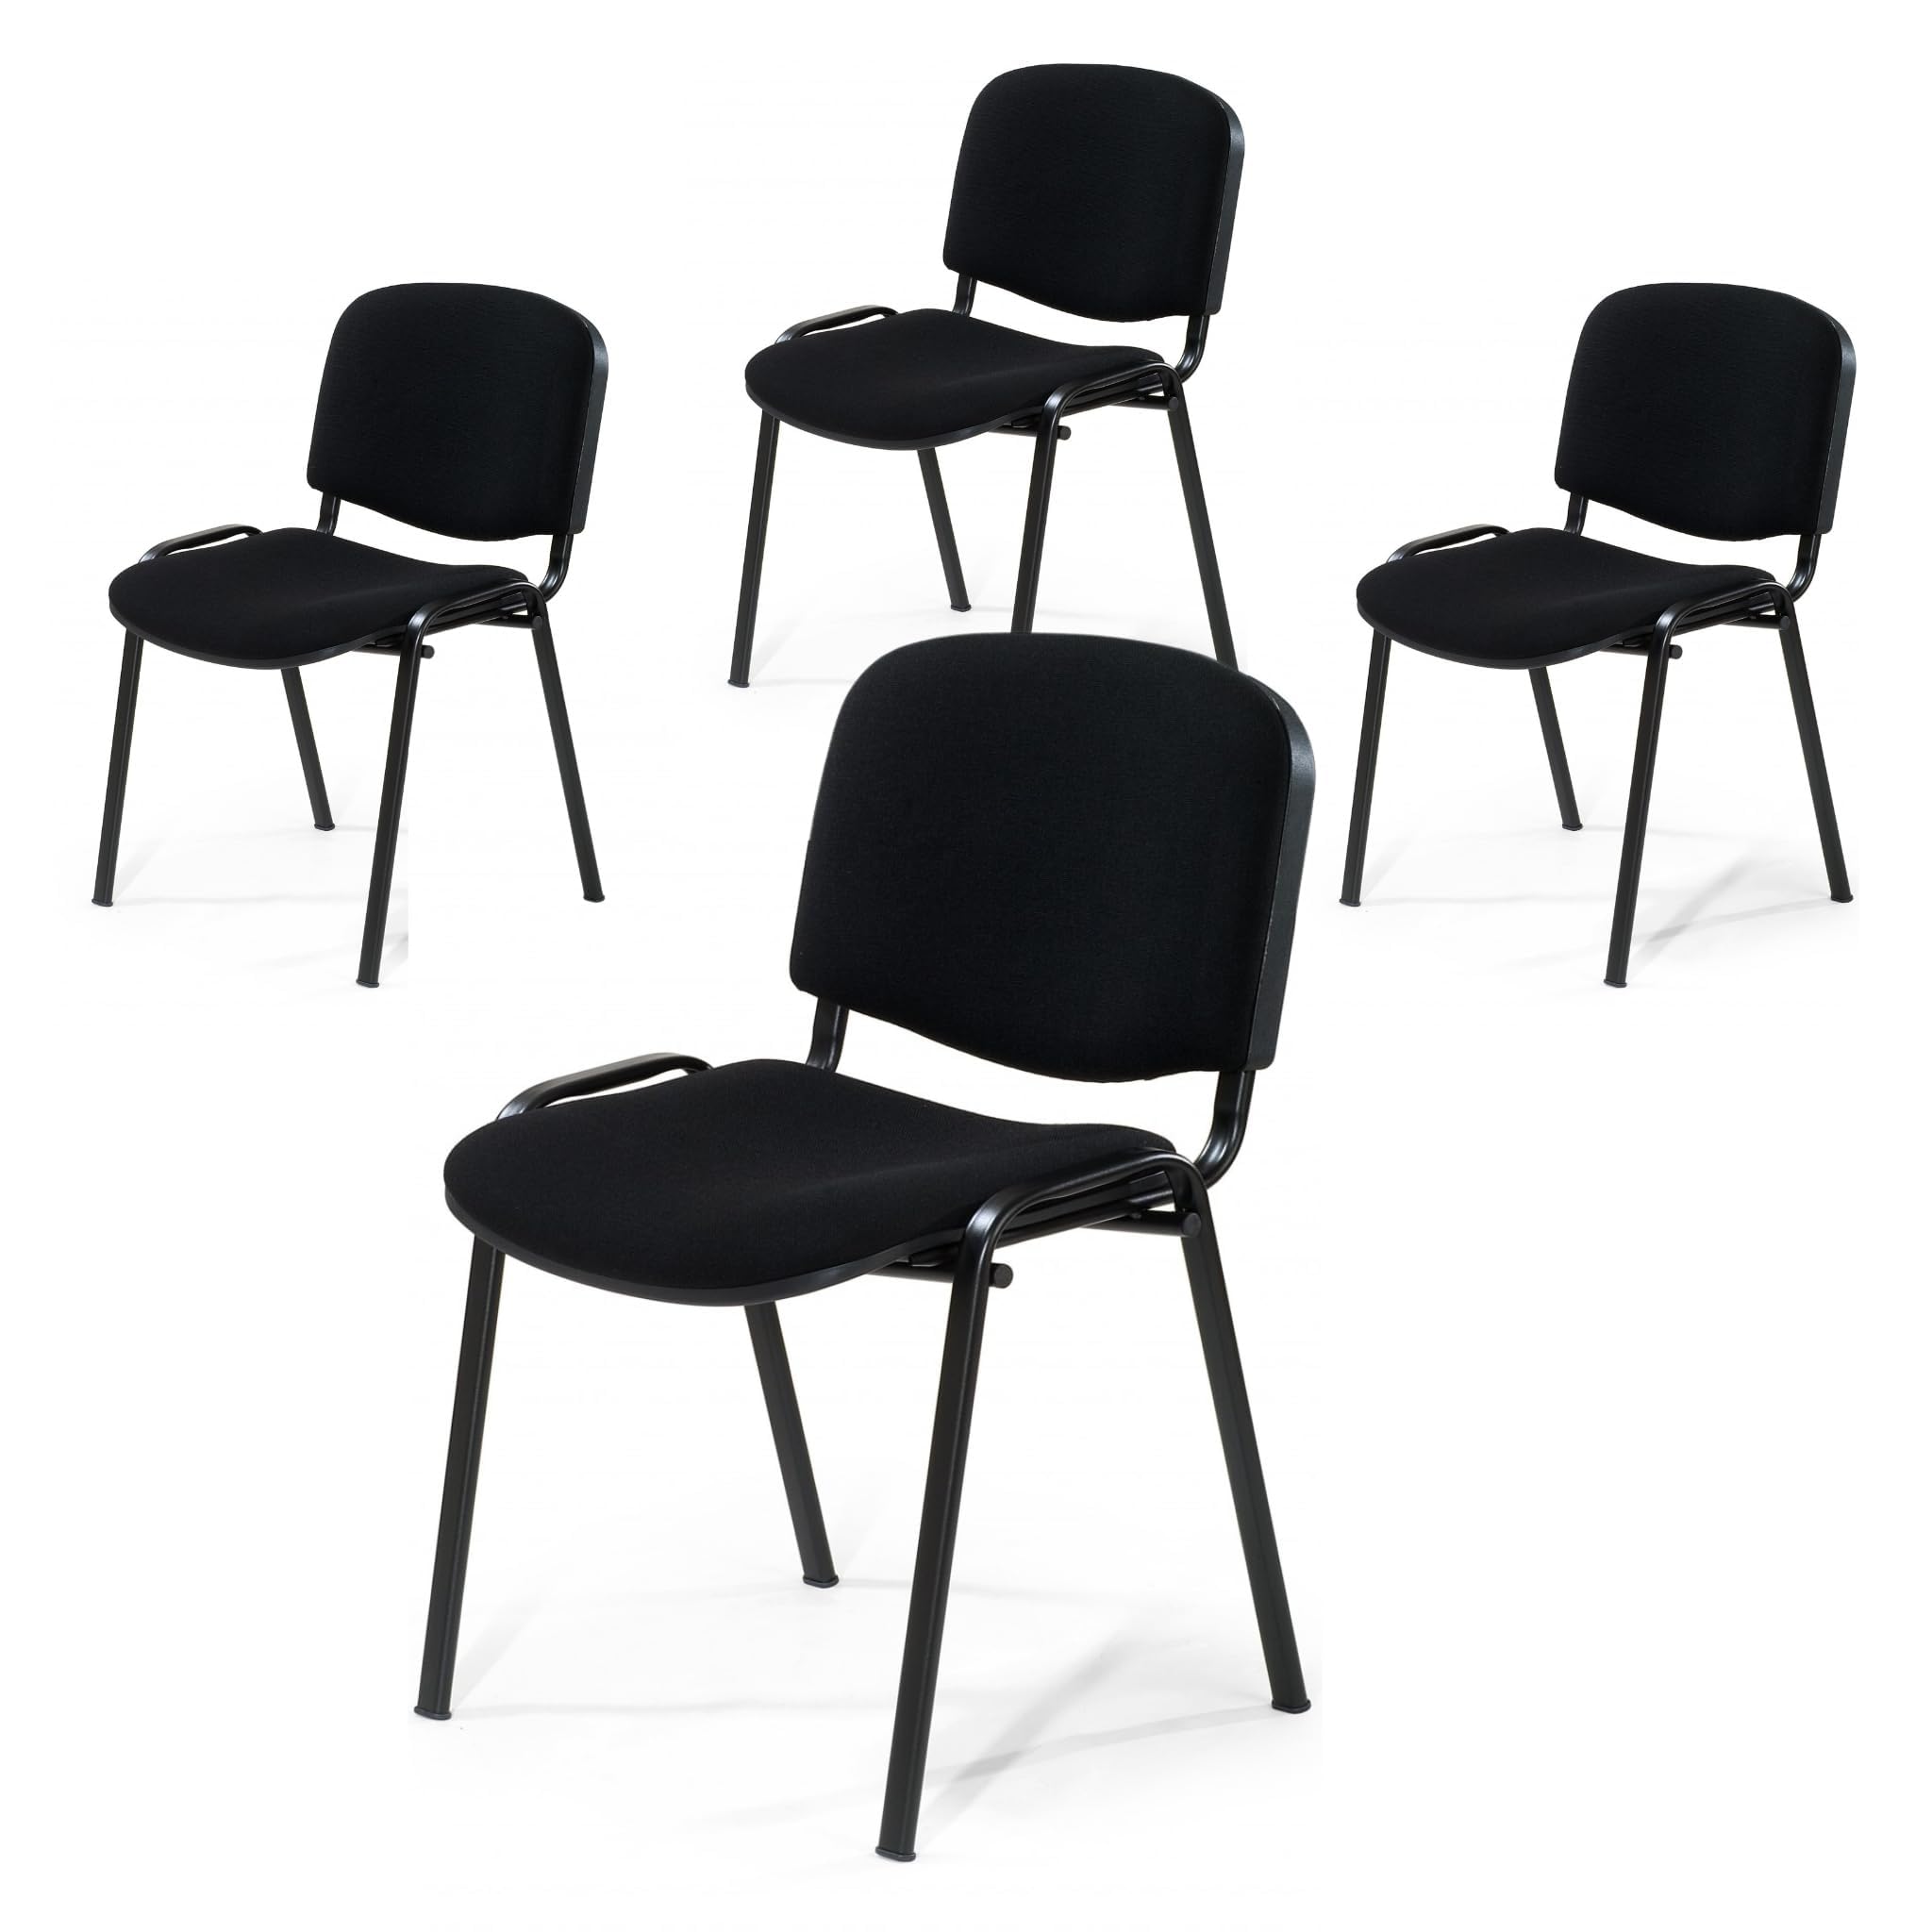 Büro & More 4er Set Besucherstuhl ISO, Bequemer Konferenzstuhl, stapelbar, mit gepolsterter Sitzfläche und Rückenlehne (Schwarz)